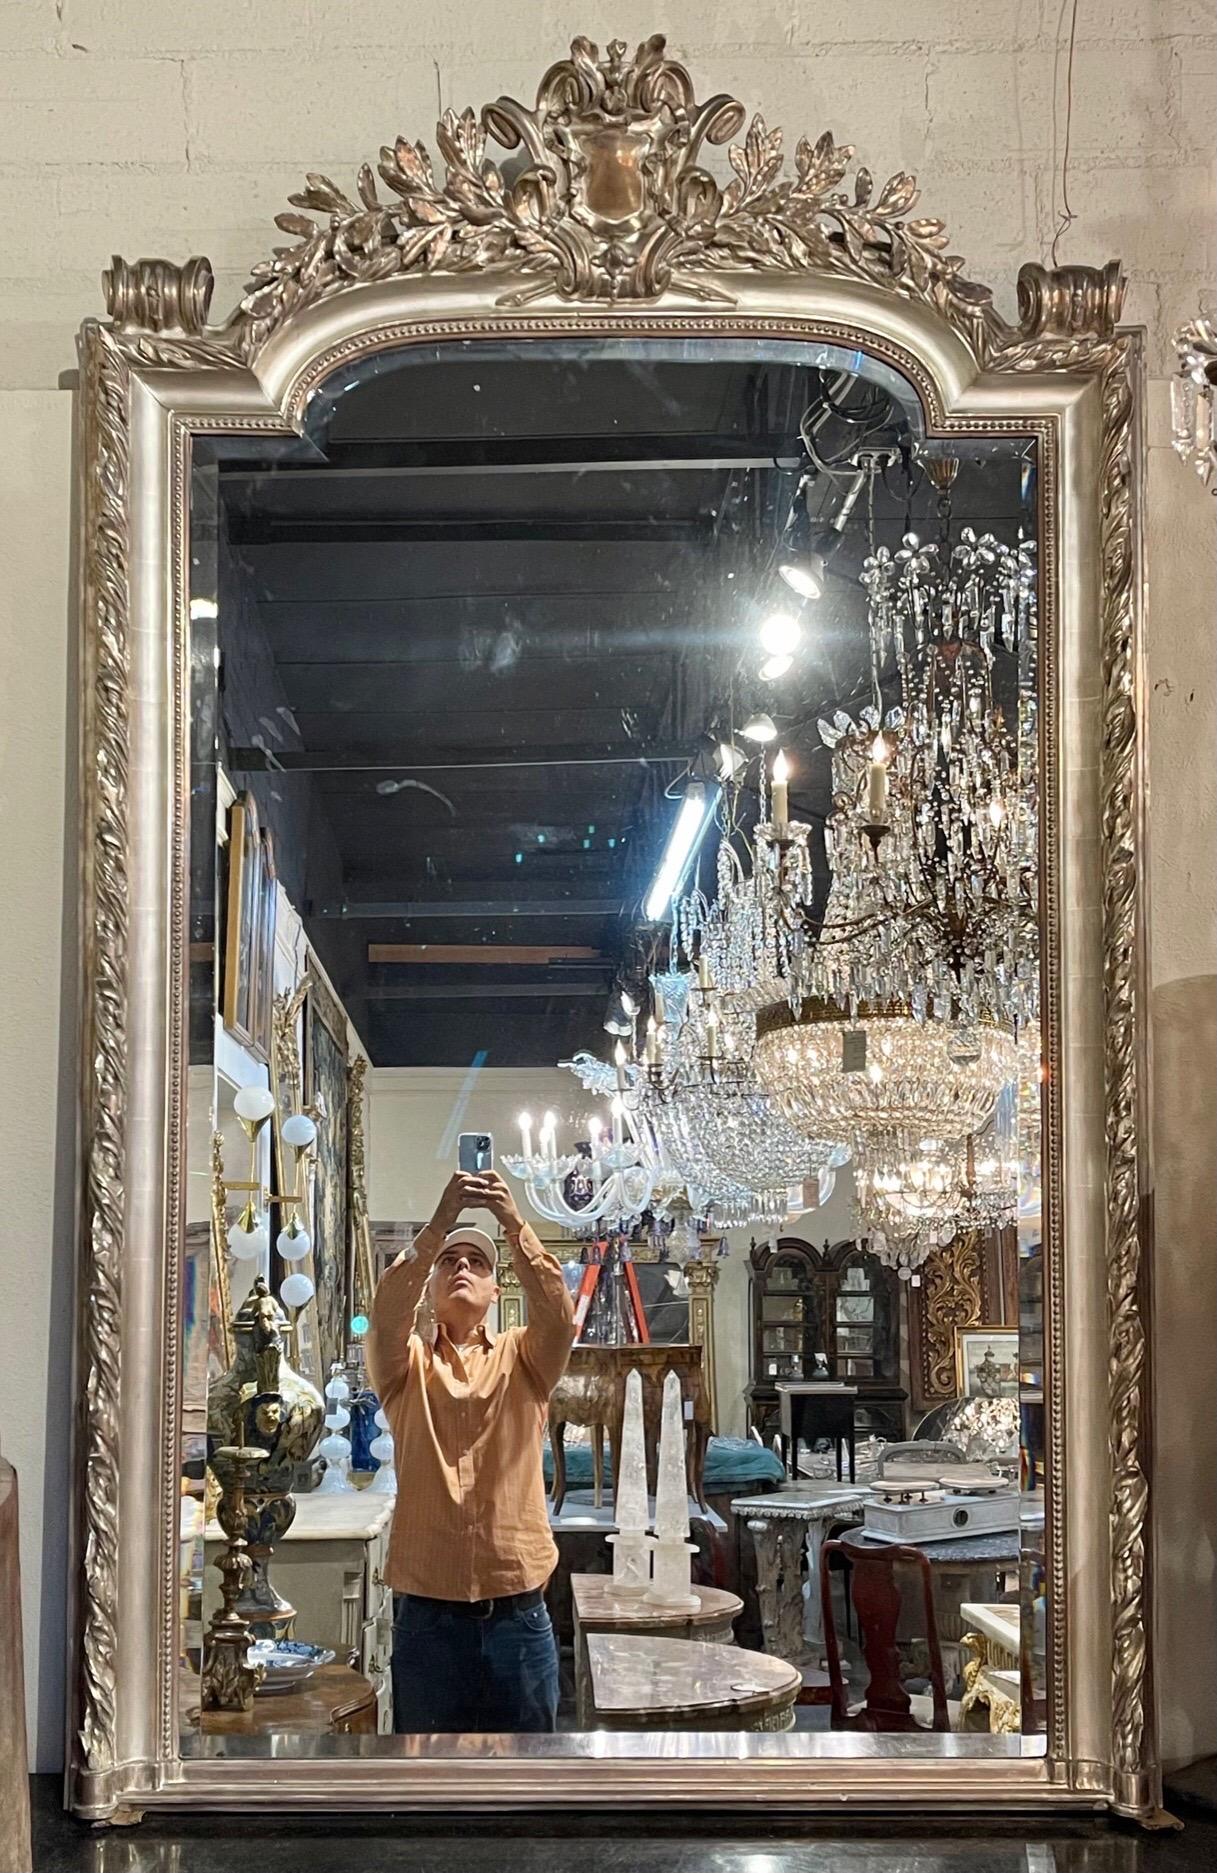 Erstaunlich große Französisch Louis XVI-Stil geschnitzt und Silber Blatt Spiegel mit abgeschrägten Glas. Mit einem kunstvoll geschnitzten Wappen an der Oberseite des Spiegels und einer fabelhaften Verarbeitung. Einfach atemberaubend!